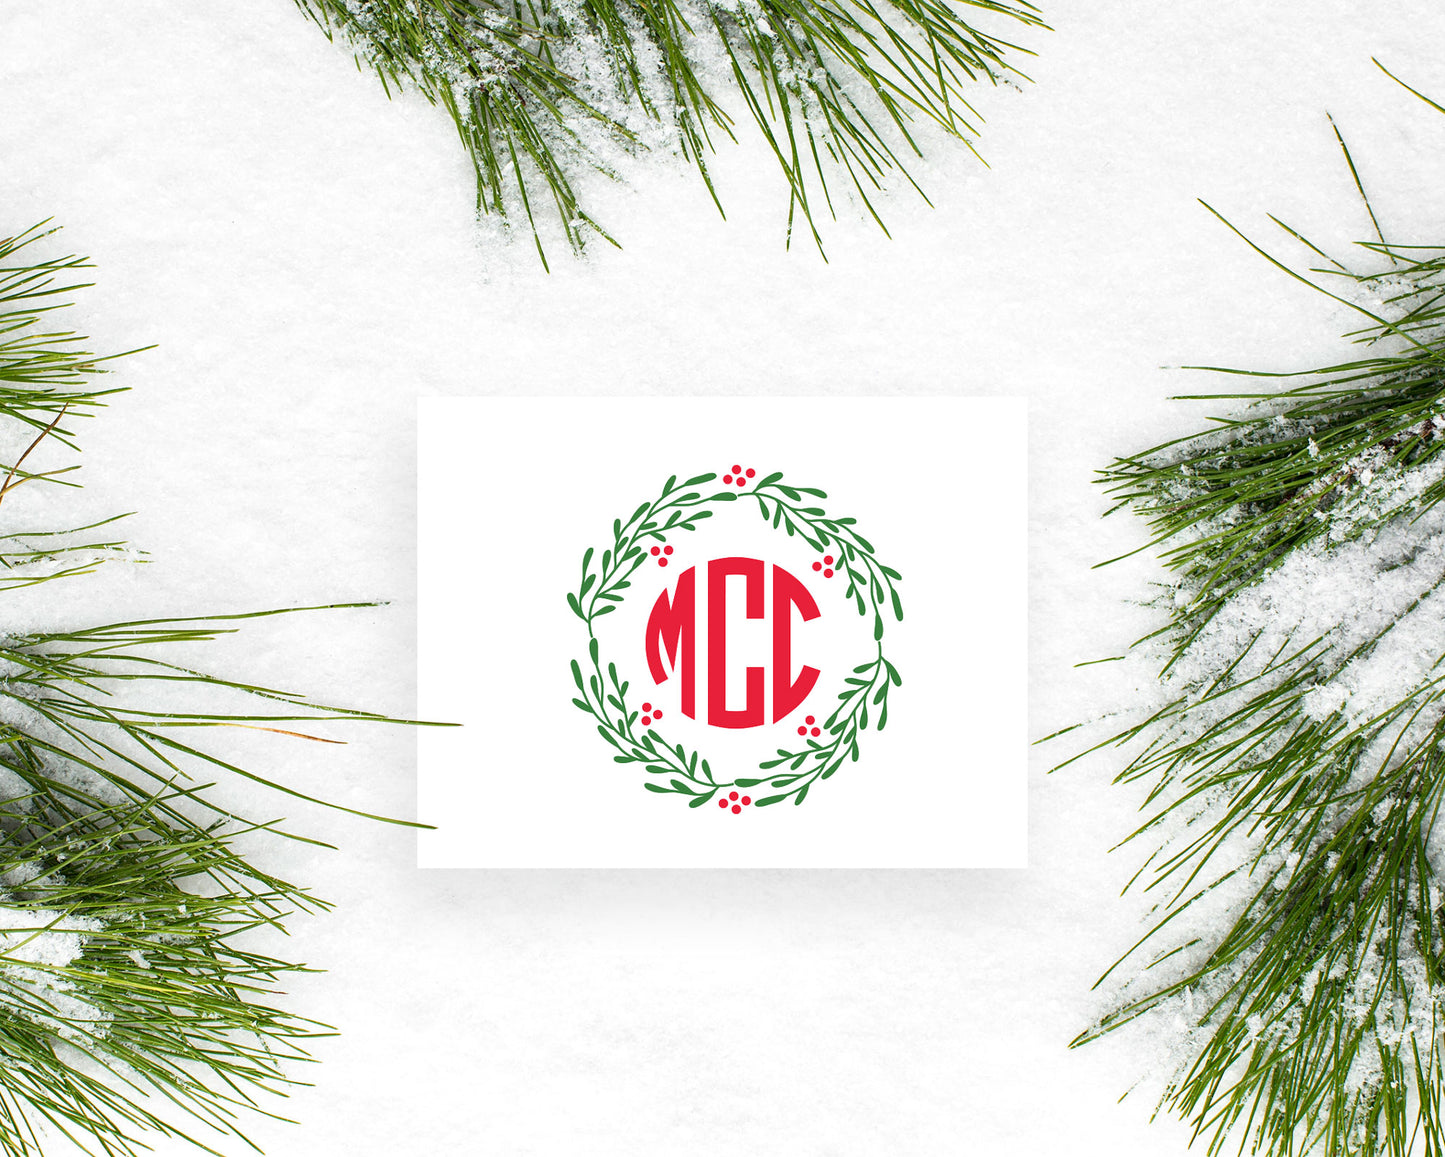 Circle Christmas Wreath Holiday Monogram Folded Stationery